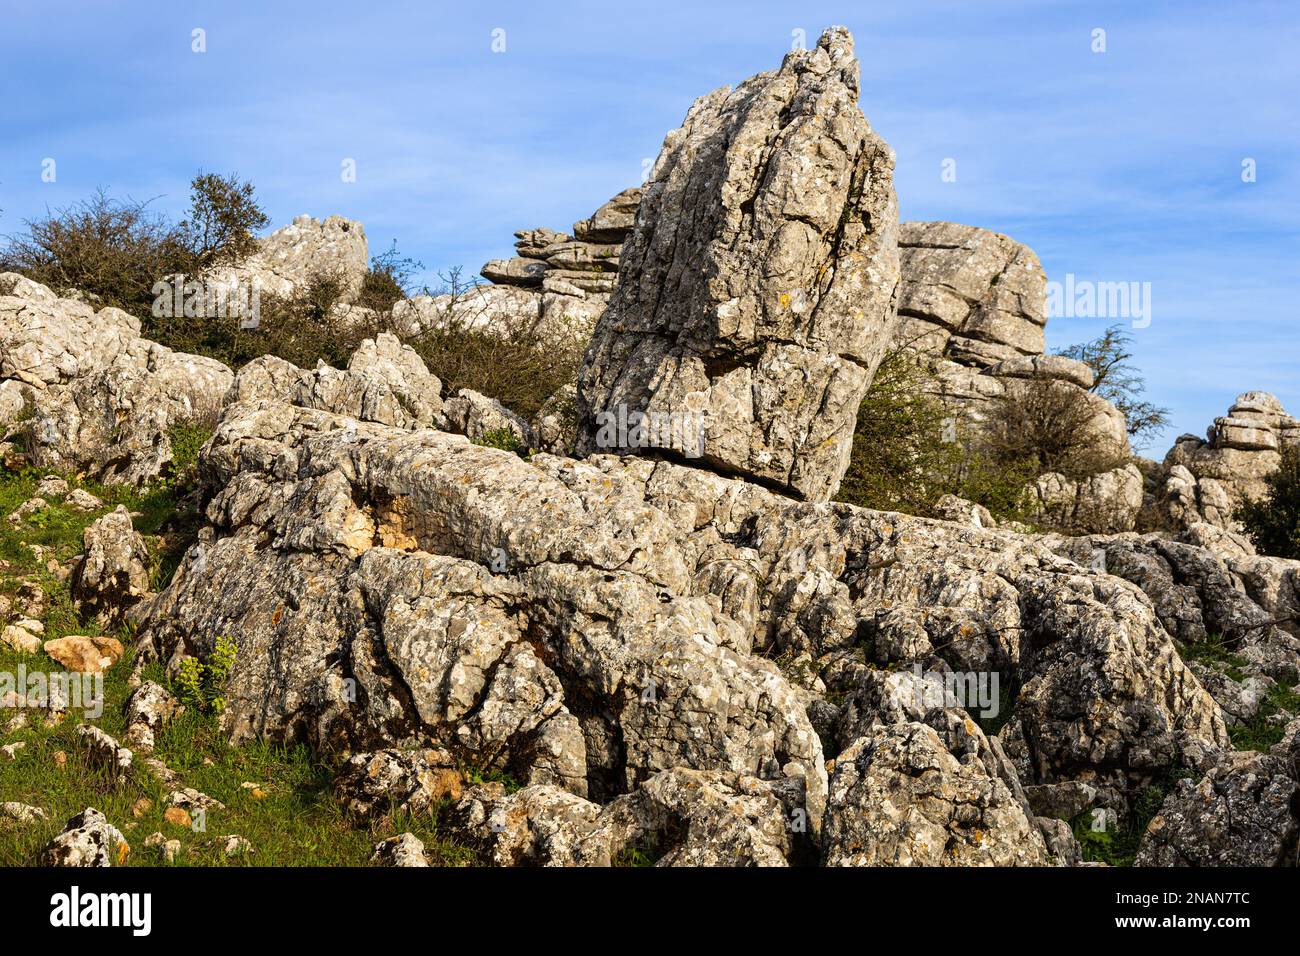 Formations rocheuses de calcaire inhabituelles dans le parc naturel de Torcal de Antequera. Province de Malaga, Andalousie, Espagne. Banque D'Images